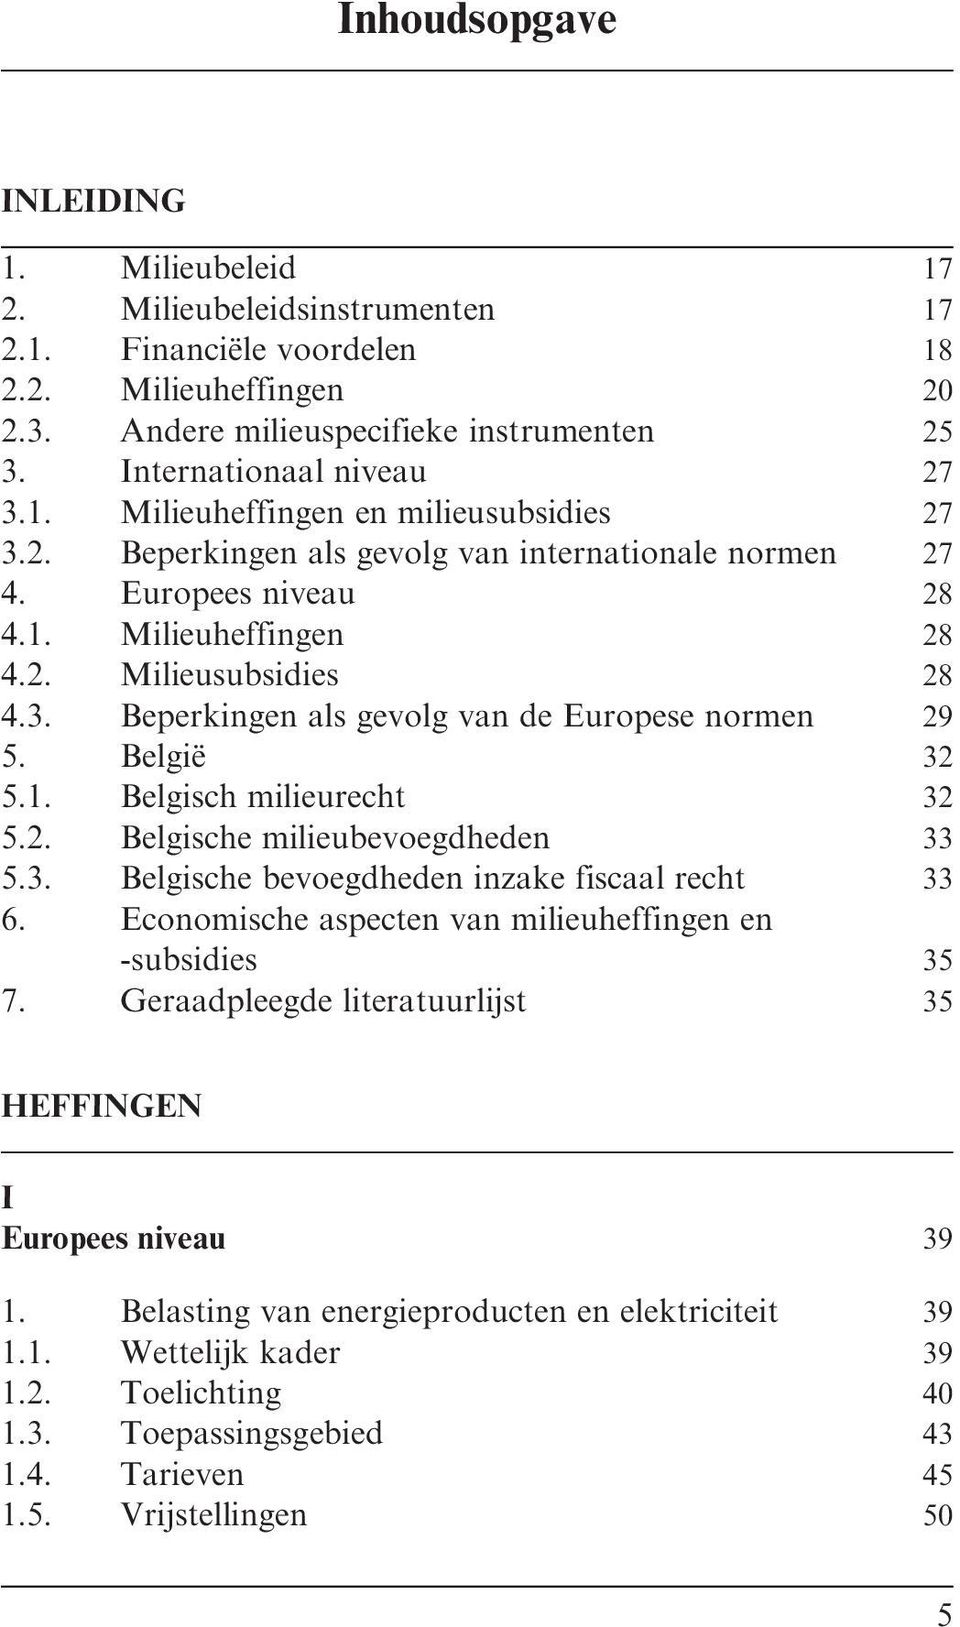 Belgie 32 5.1. Belgisch milieurecht 32 5.2. Belgische milieubevoegdheden 33 5.3. Belgische bevoegdheden inzake fiscaal recht 33 6. Economische aspecten van milieuheffingen en -subsidies 35 7.